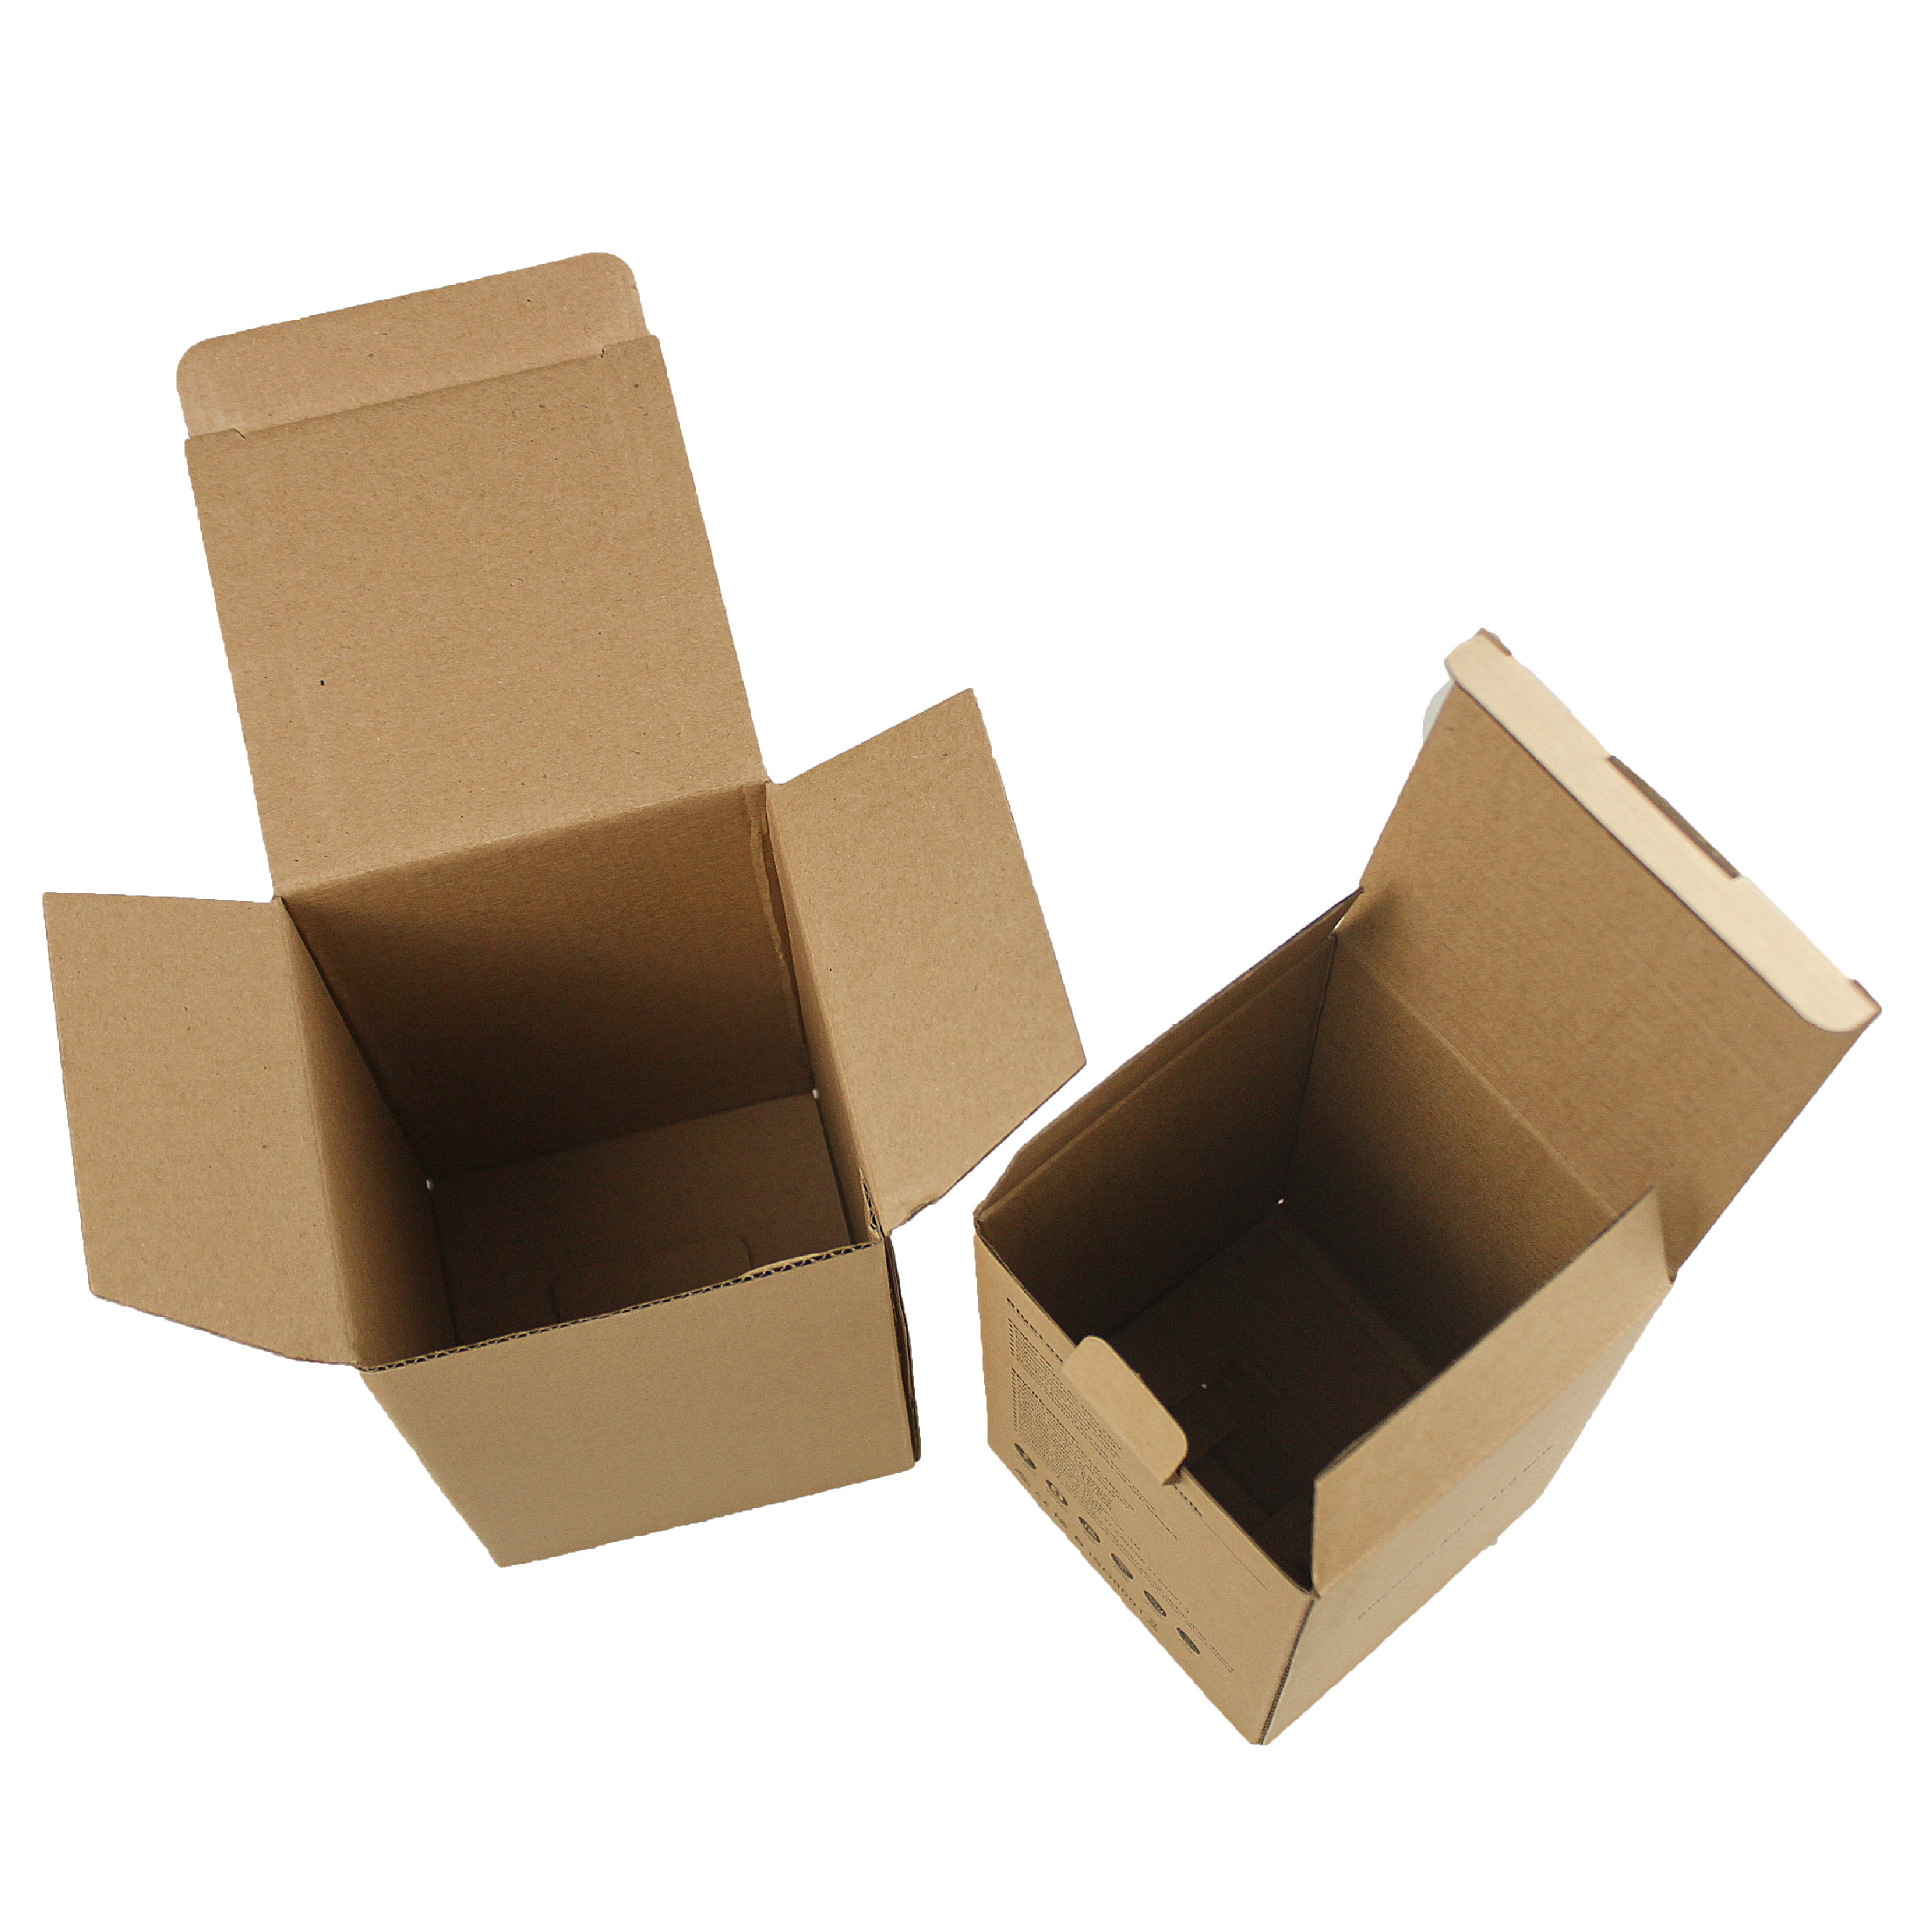 瓦楞纸盒厂家供应坑纸盒定做 E瓦楞纸盒包装盒 彩色印刷牛皮纸包装盒